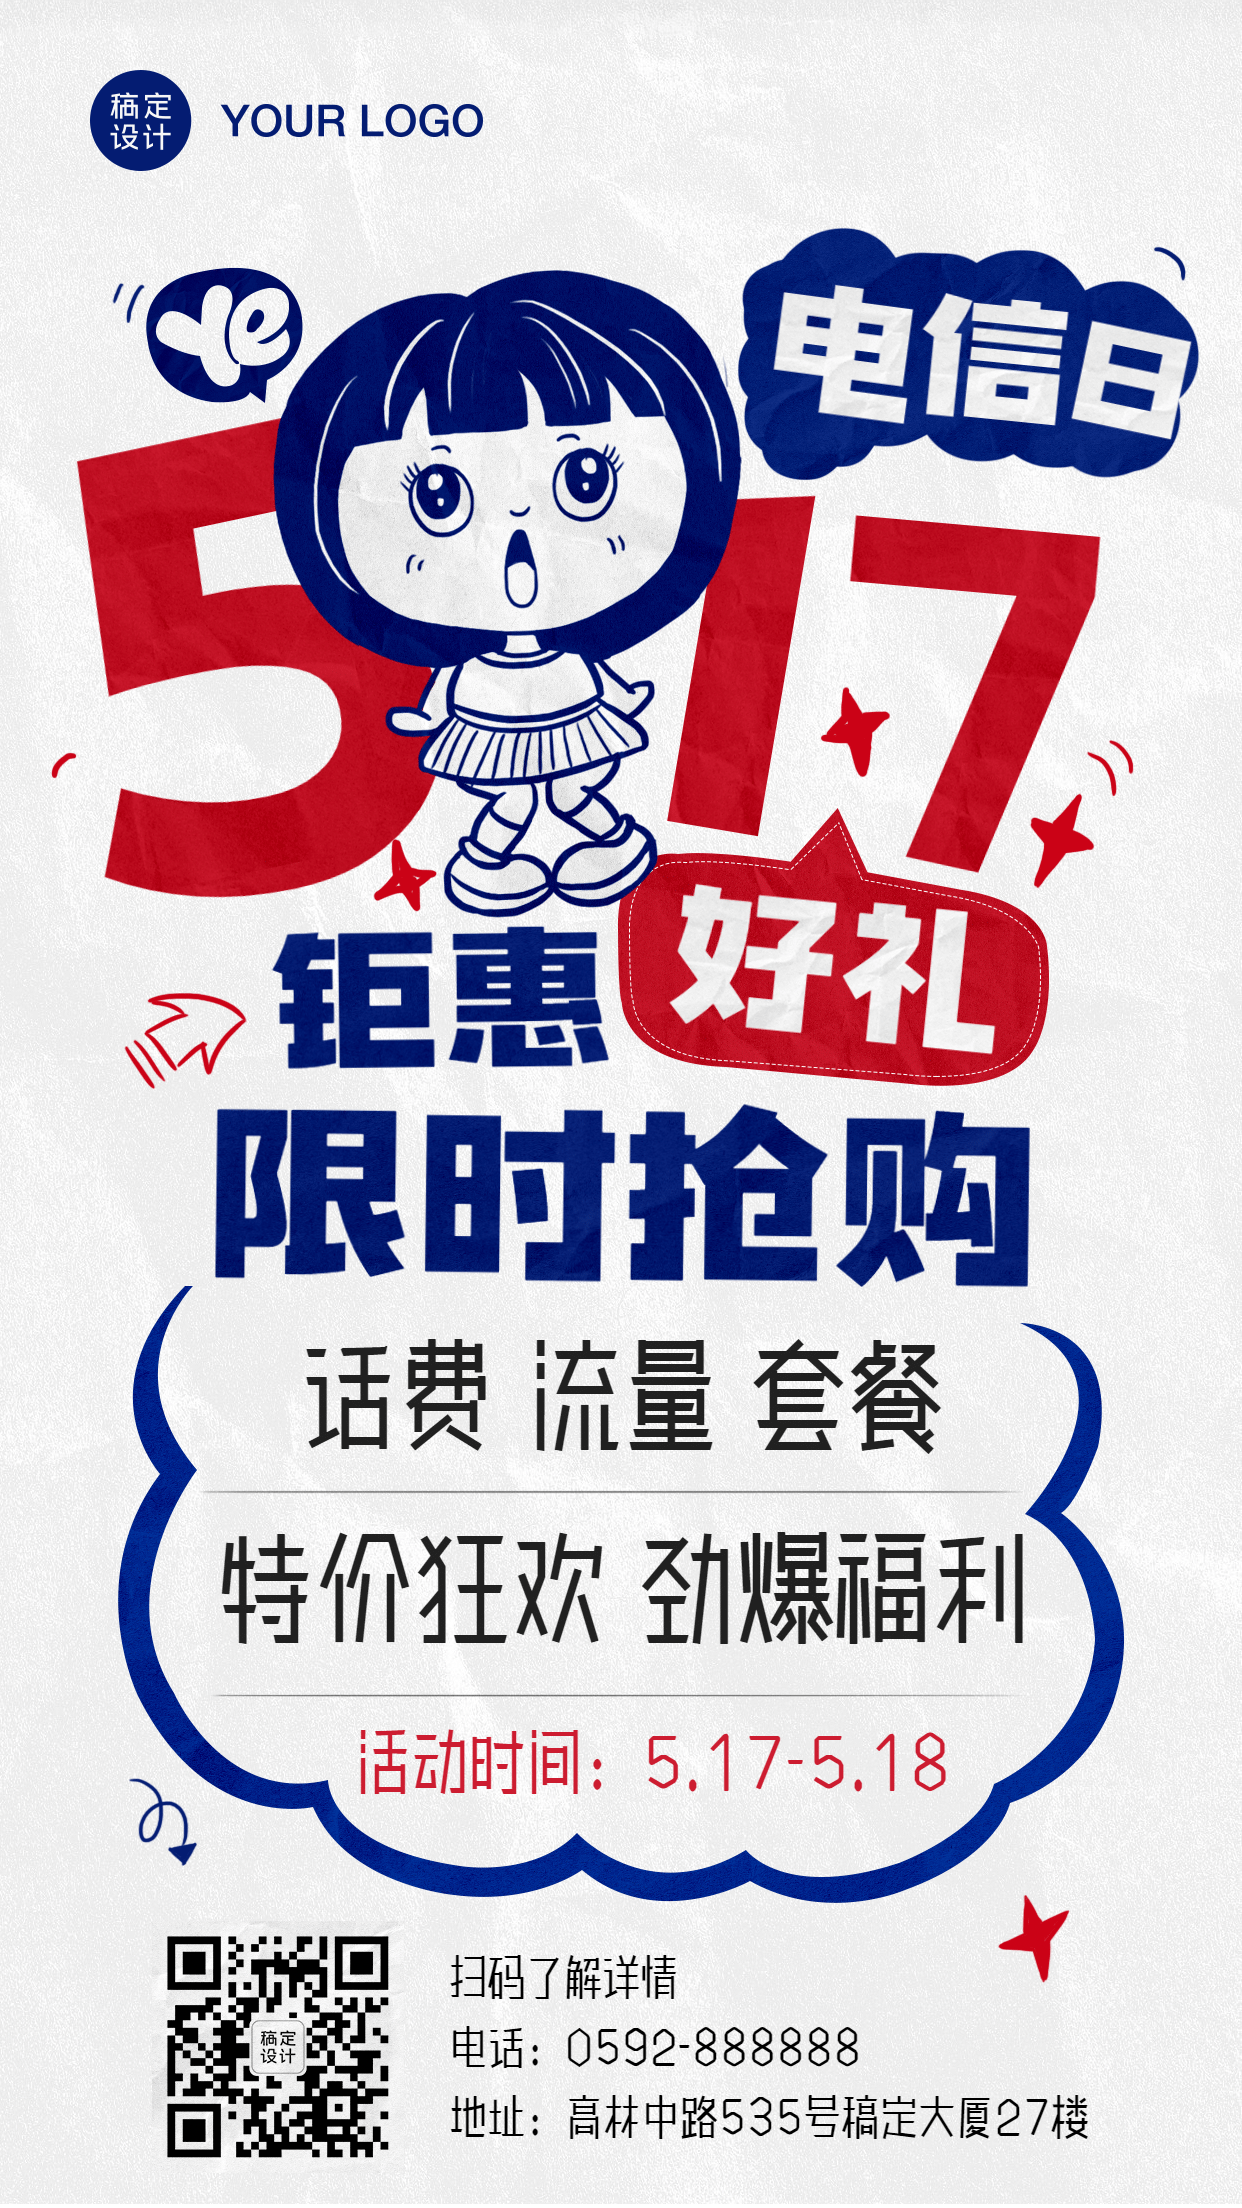 517电信日福利促销pop风格手机海报